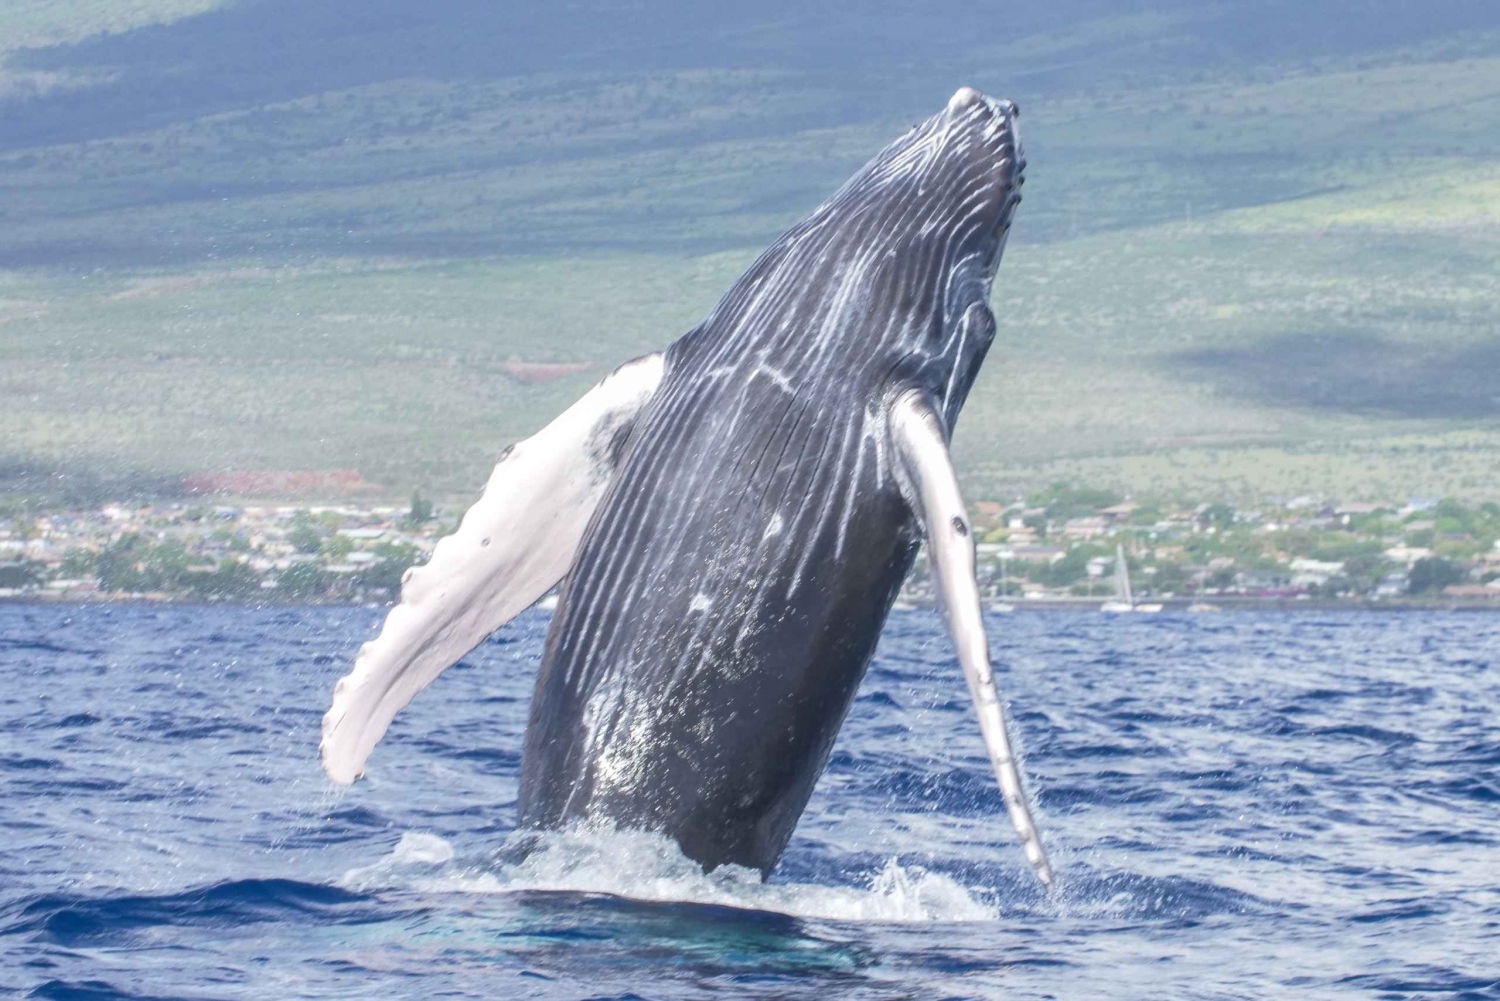 De Maalaea: Cruzeiro de catamarã para observação de baleias com bebidas